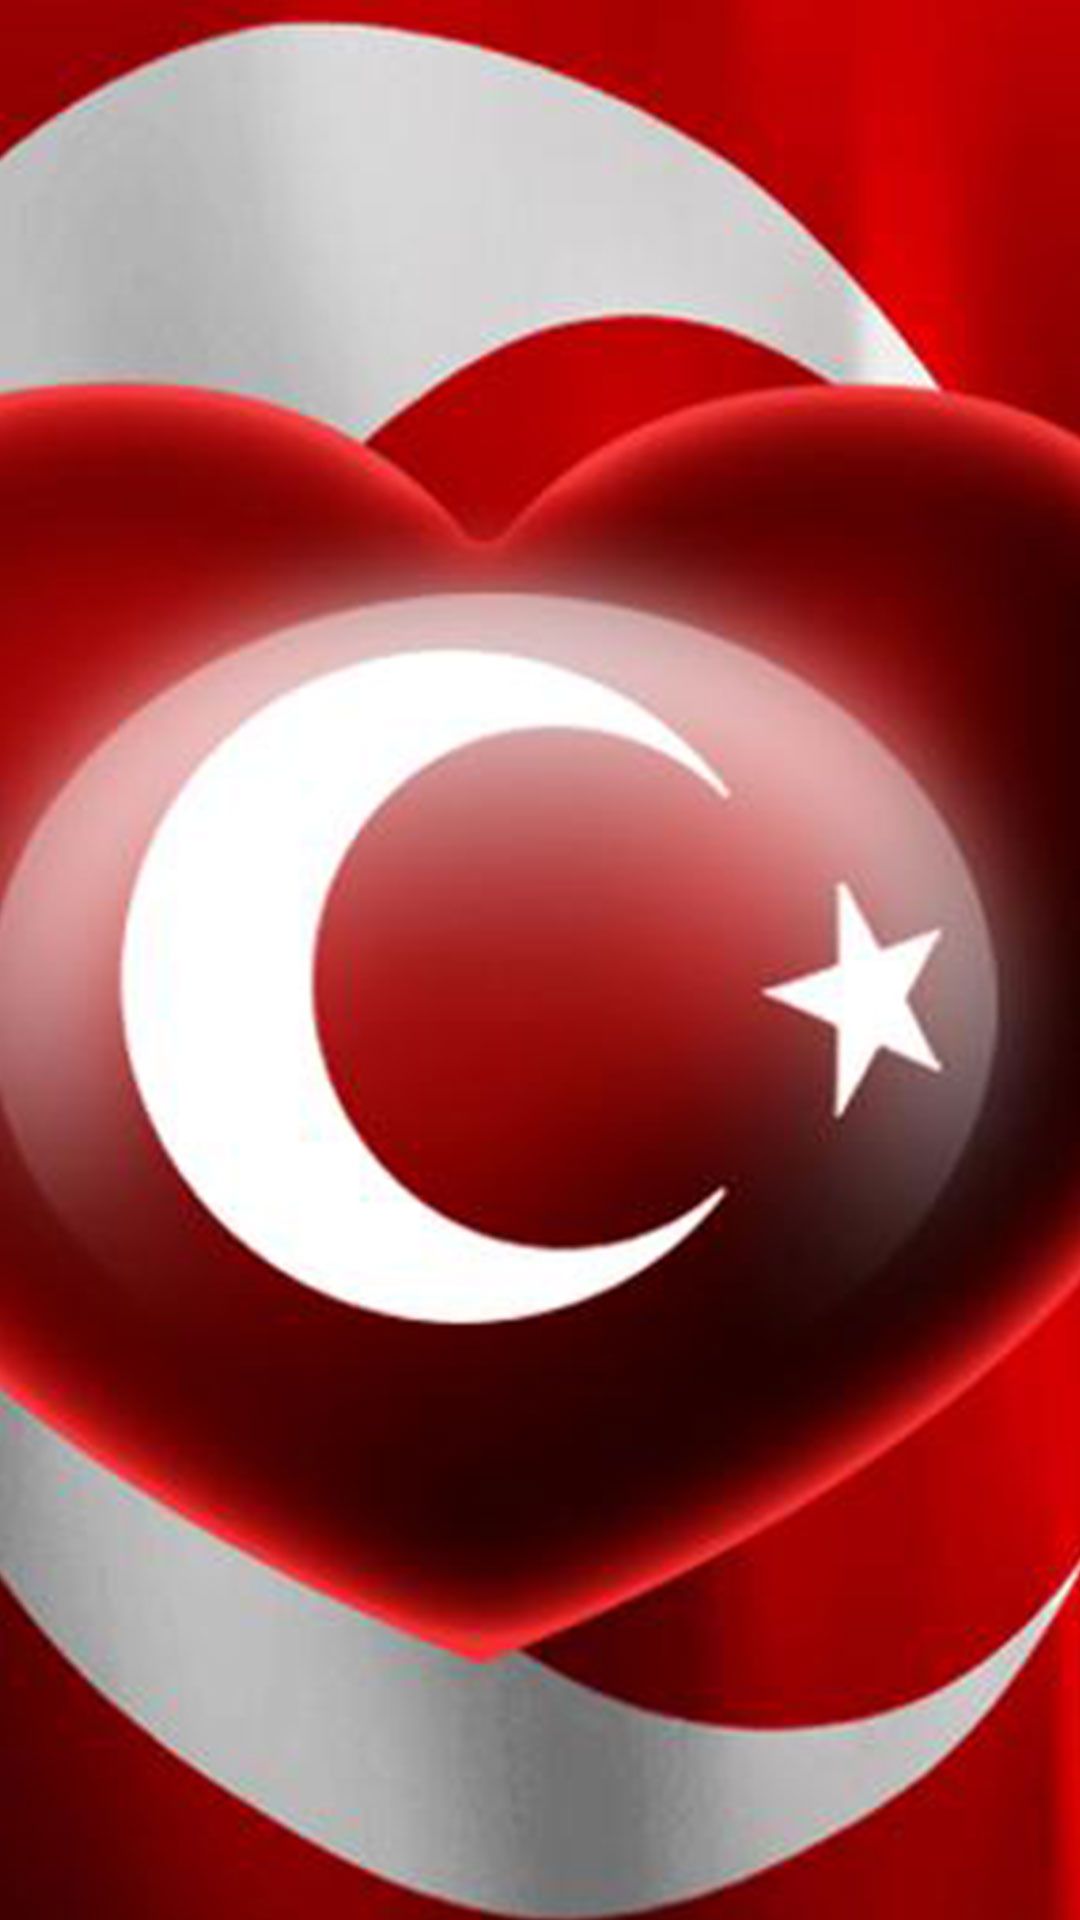 Kalpli turk bayragi 8